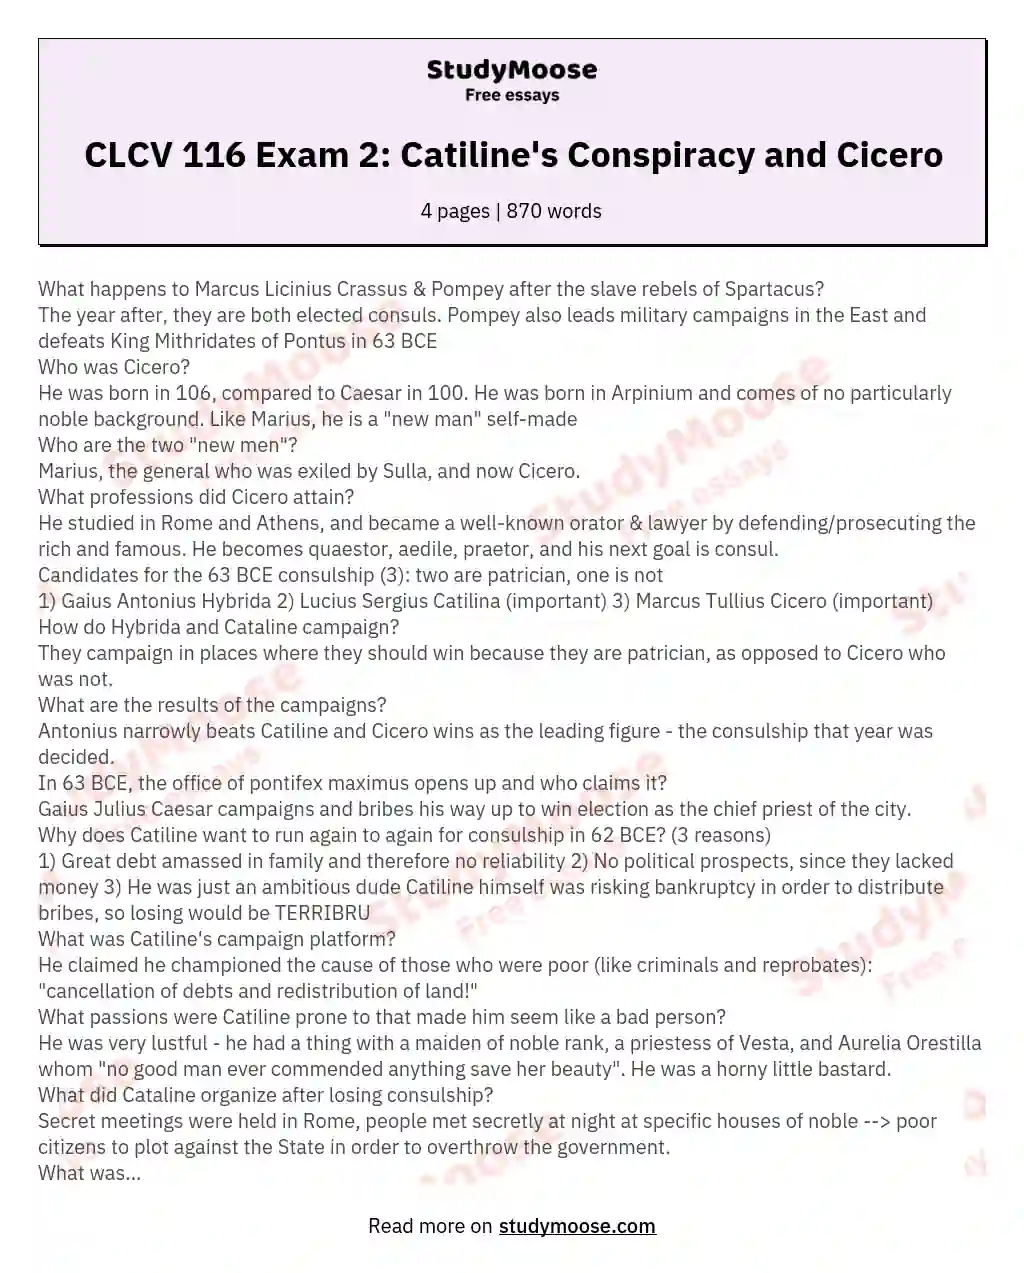 CLCV 116 Exam 2: Catiline's Conspiracy and Cicero essay